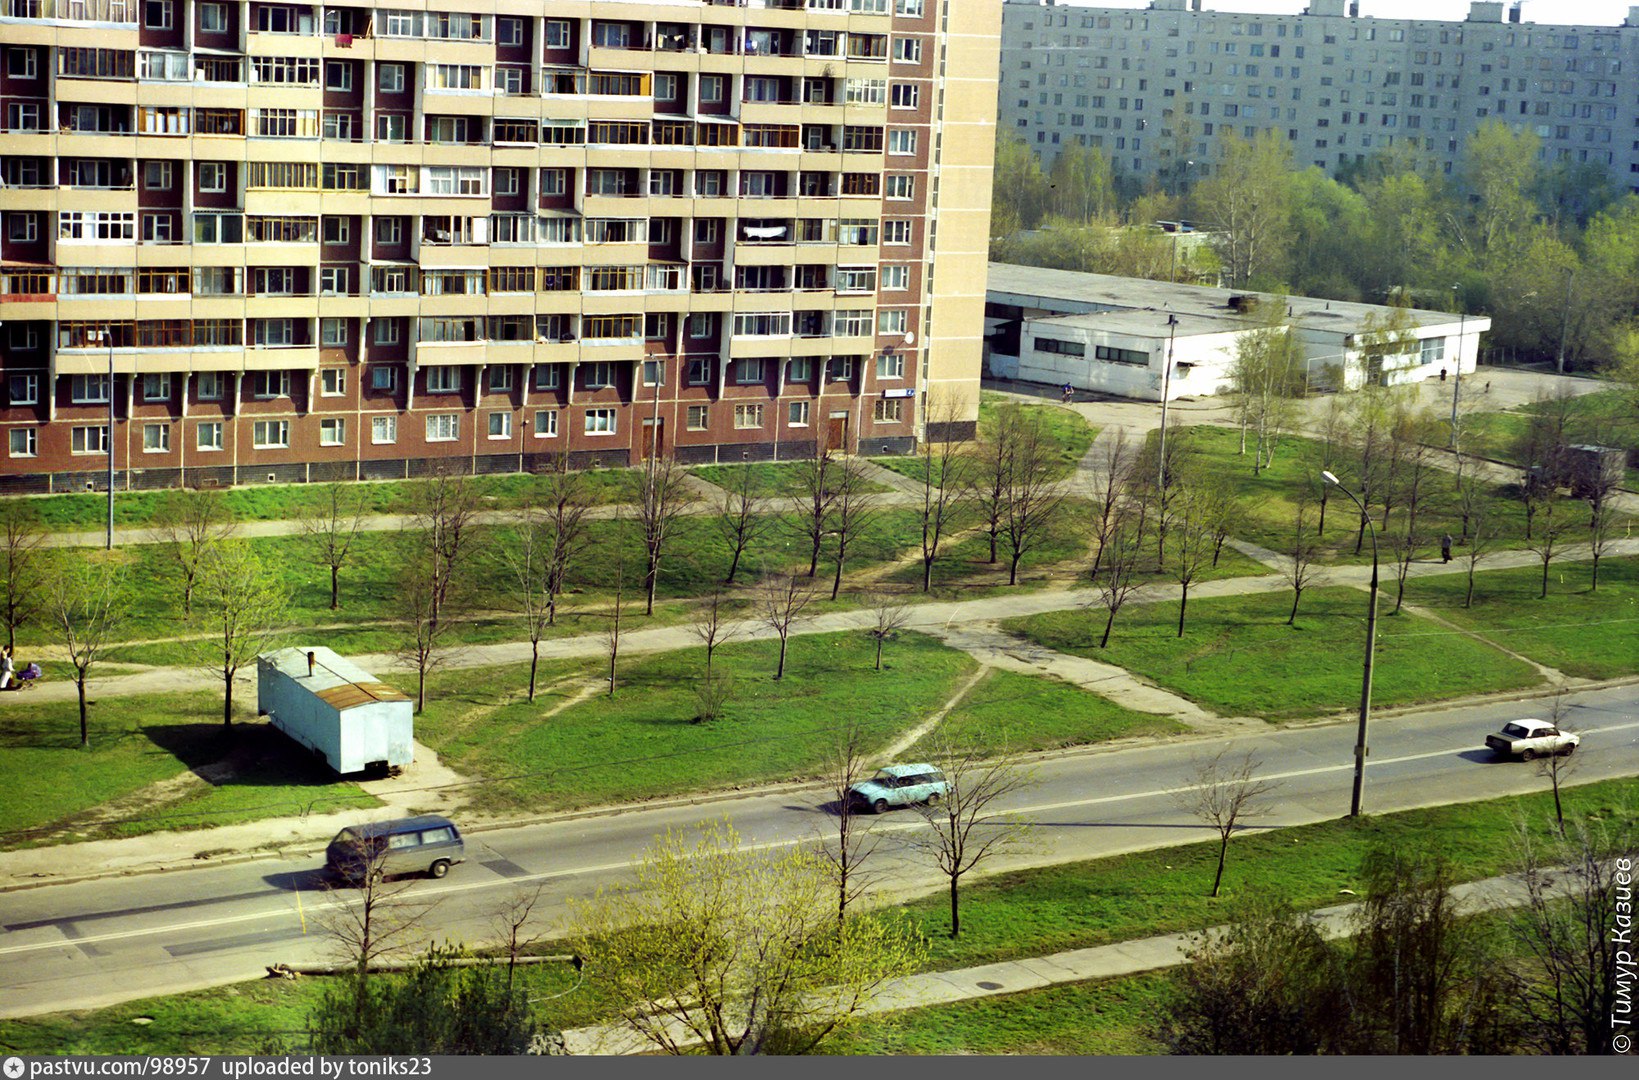 Бирюлево Западное 2000 год. Бирюлево Западное район Москвы. Бригада Бирюлево Западное. Бирюлево трущобы.